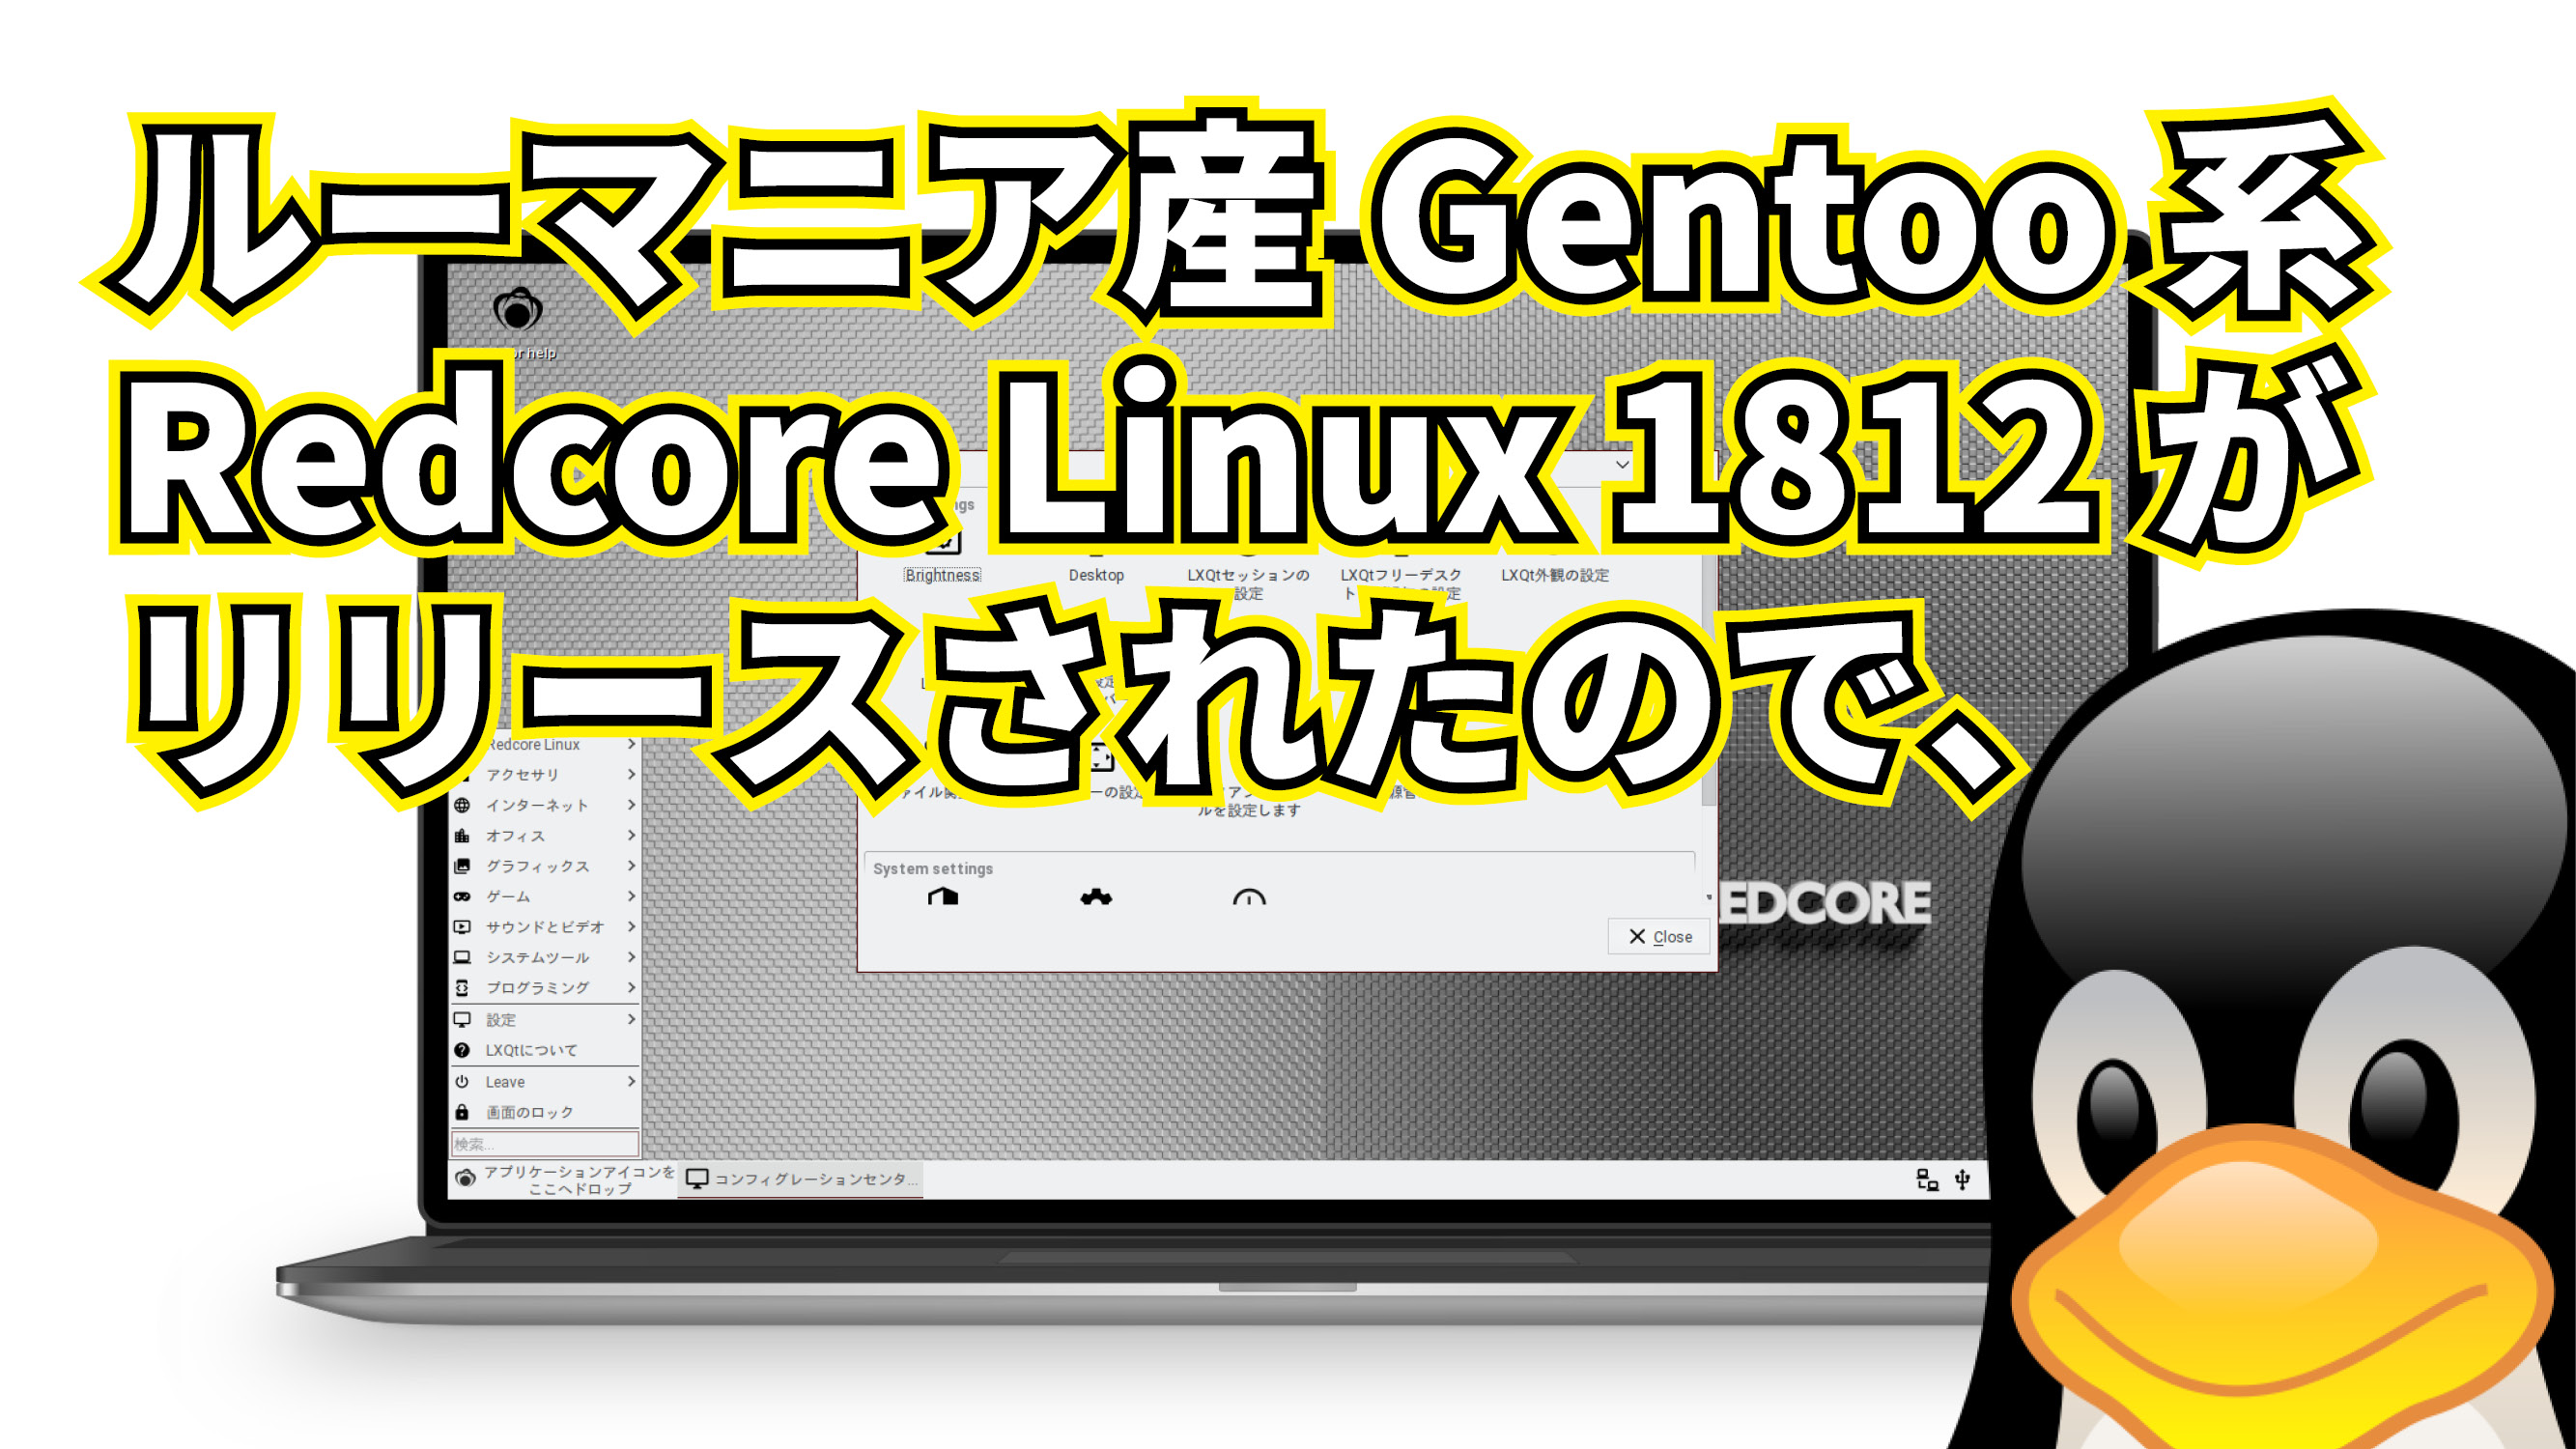 ルーマニア産 Gentoo 系ディストロ Redcore Linux 1812 がリリースされたので、